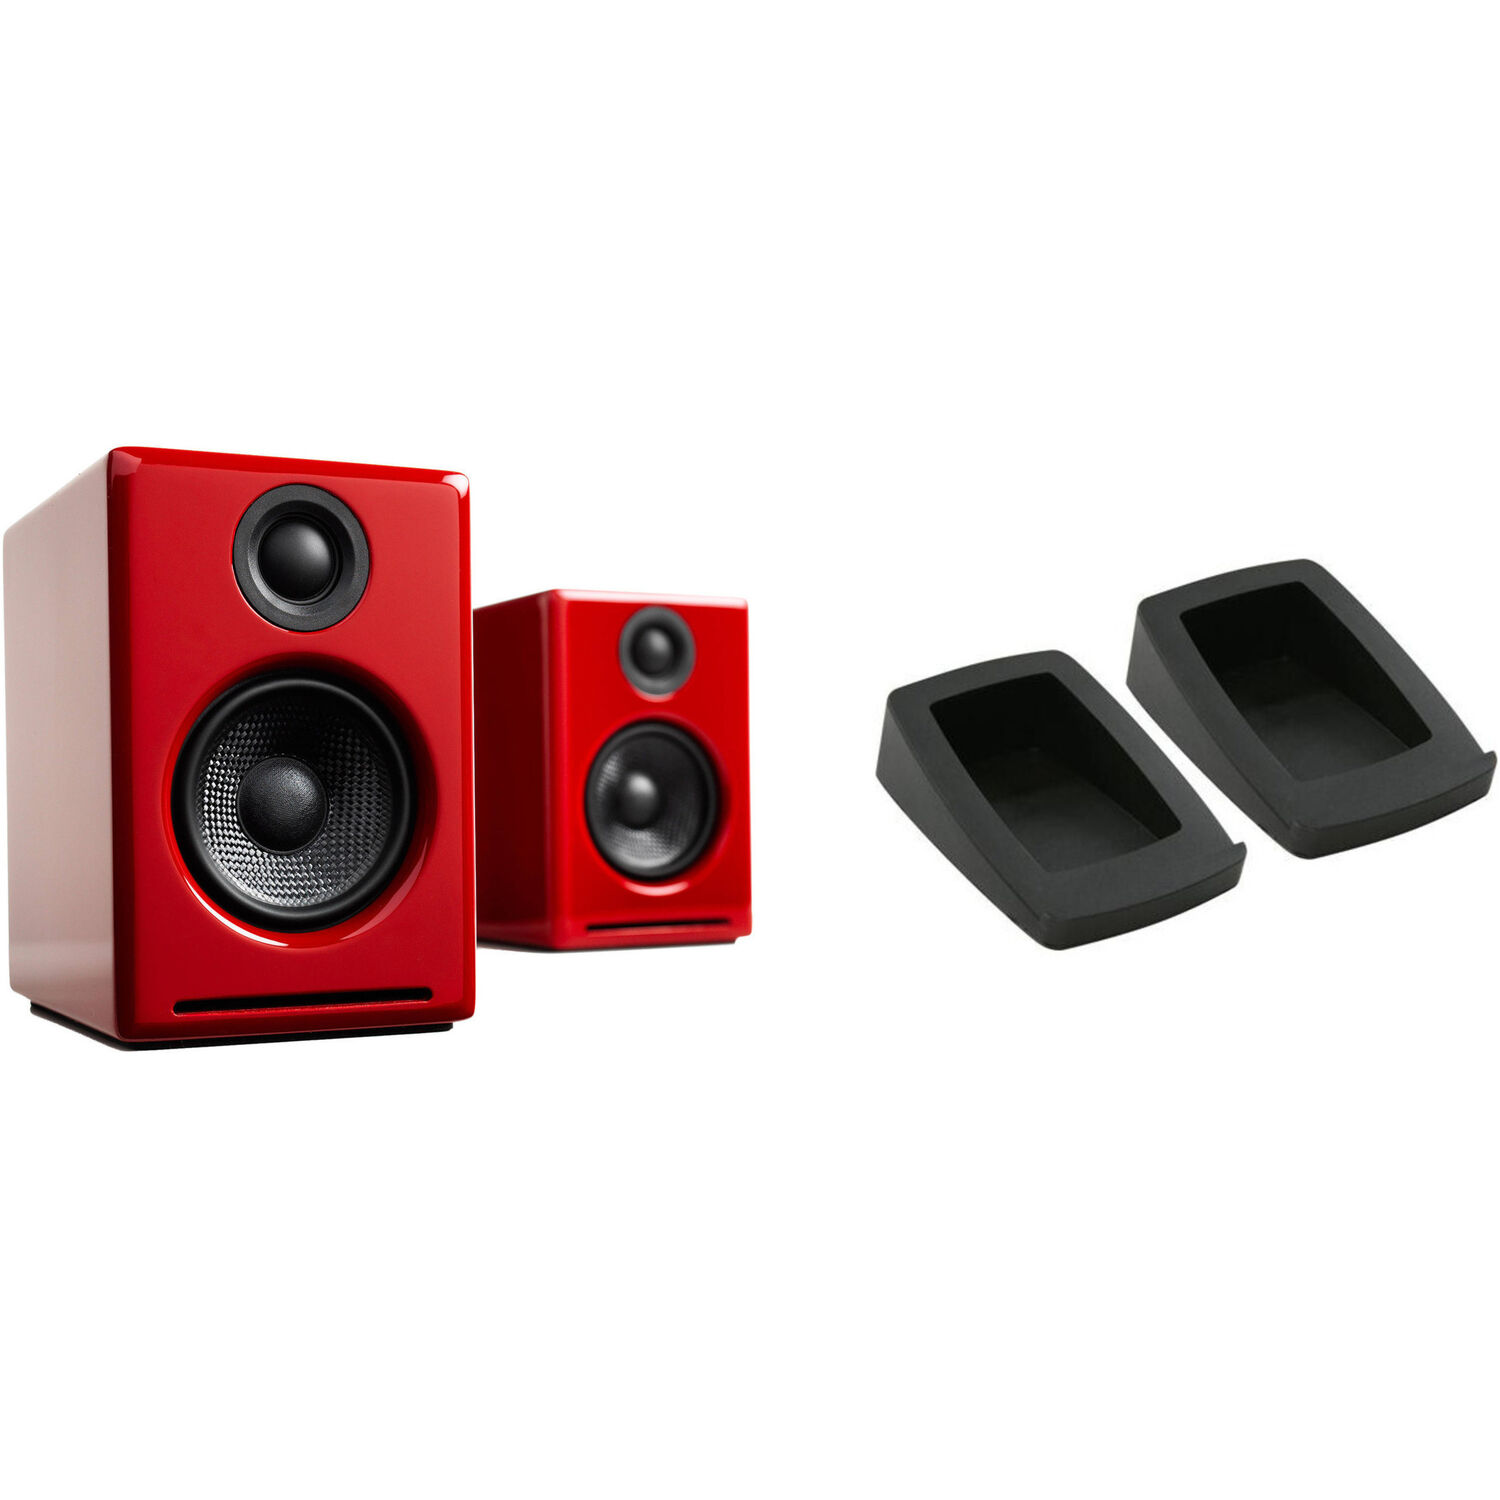 Par de Altavoces Inalámbricos Bluetooth Audioengine A2+ con Soportes de Escritorio Ds1 Rojo de Alto